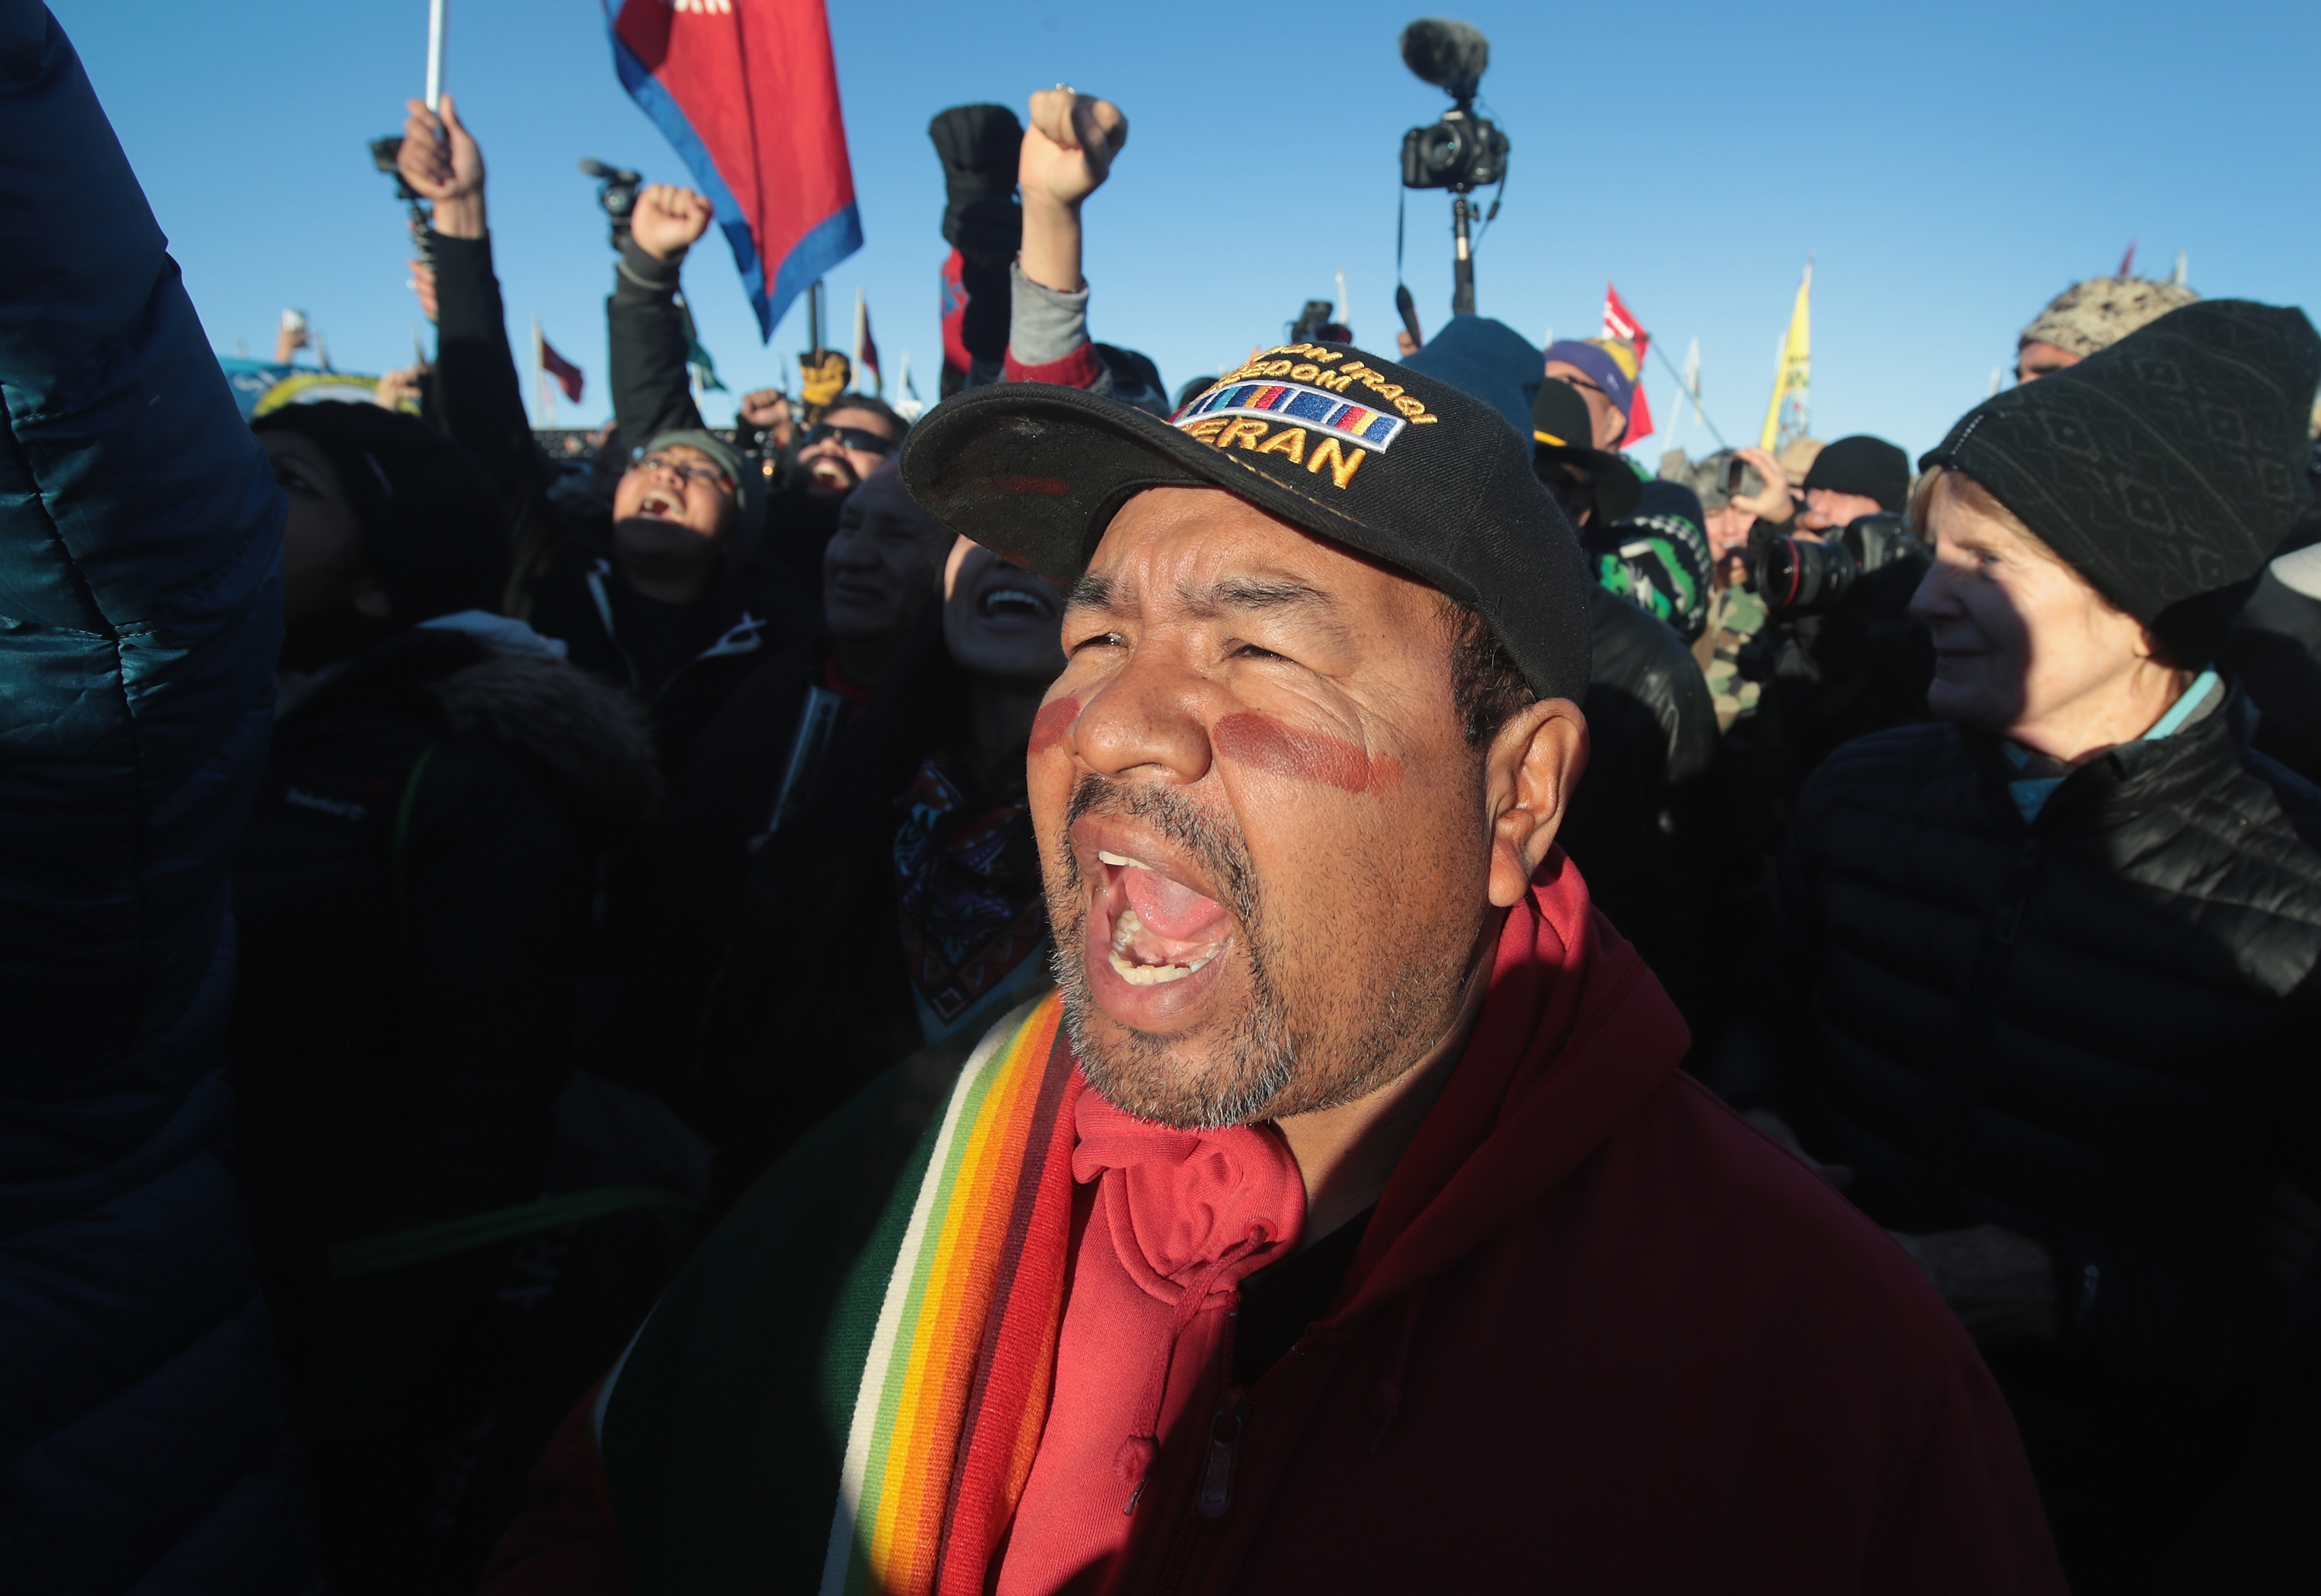 A legkeményebb körülmények között tartottak ki a Standing Rock-tüntetők, most győztek, de jön Trump